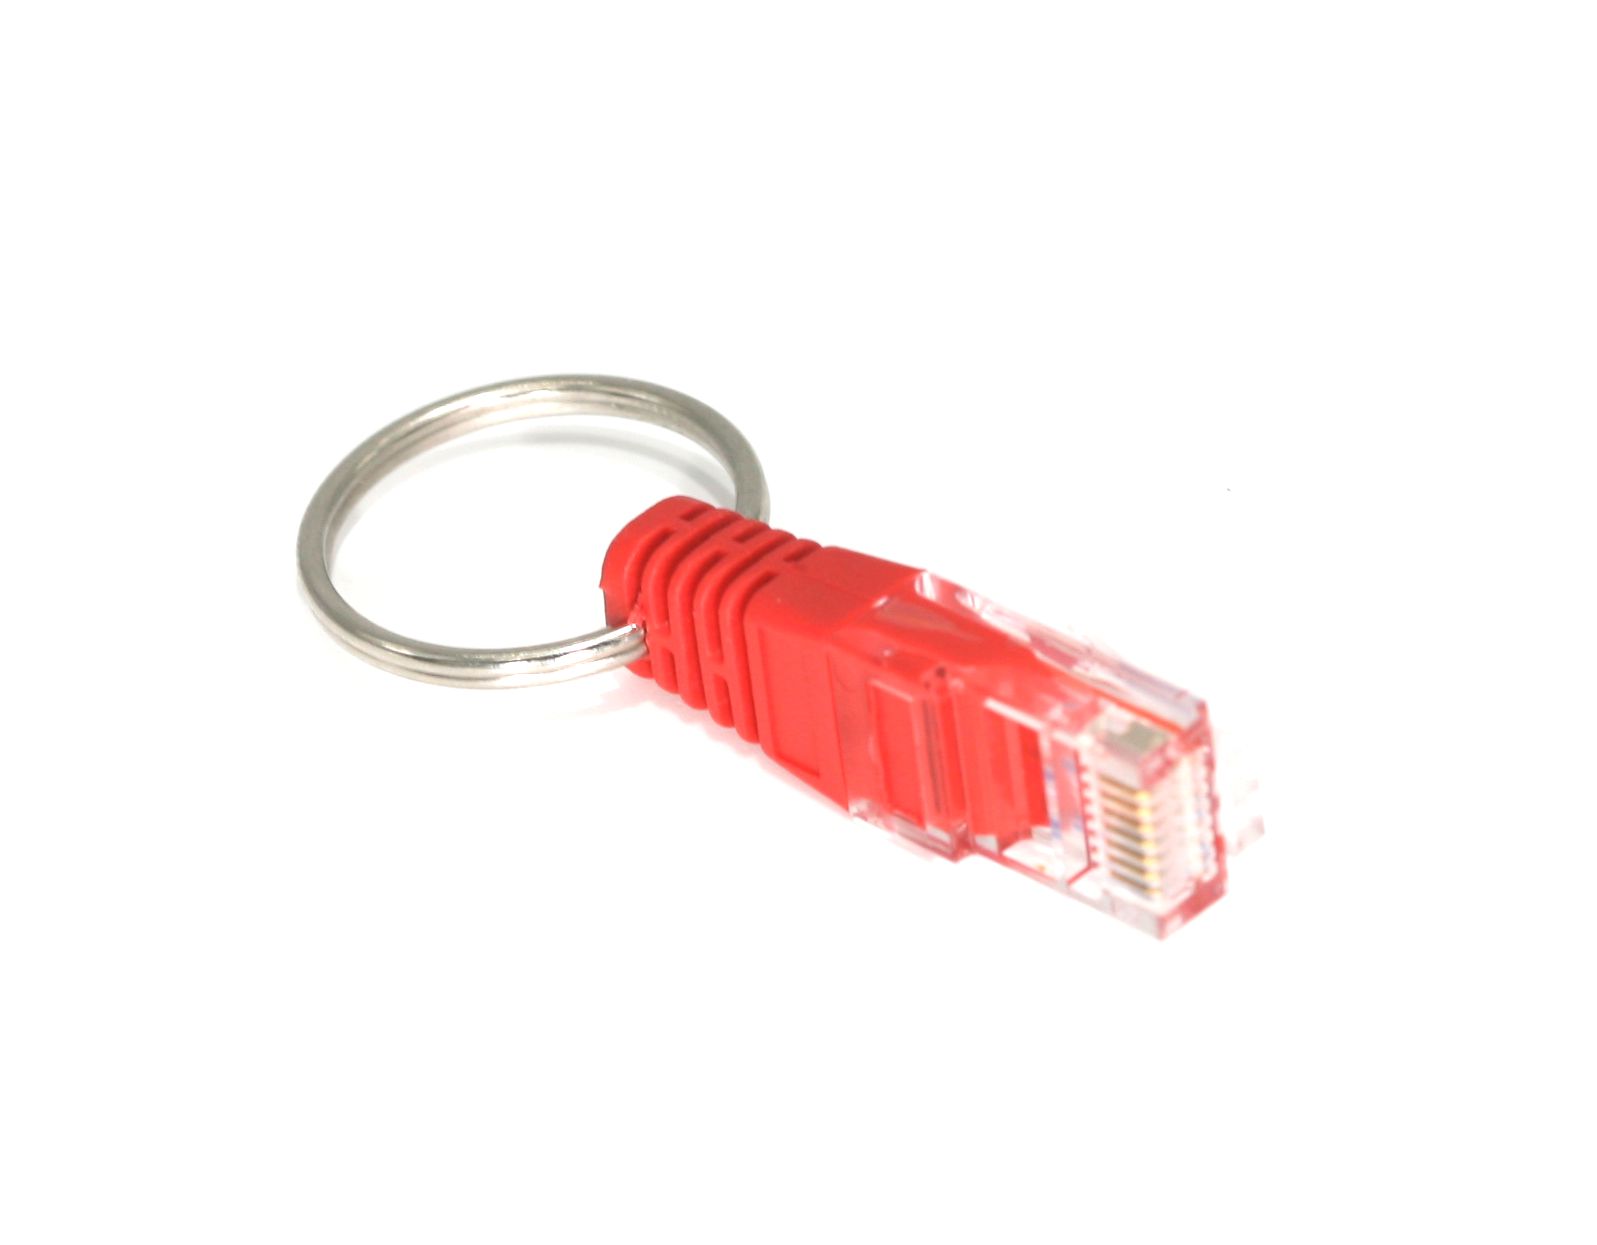 Loopback Adapter Tester Plug RJ45 Network GigaBit 100MB Ethernet